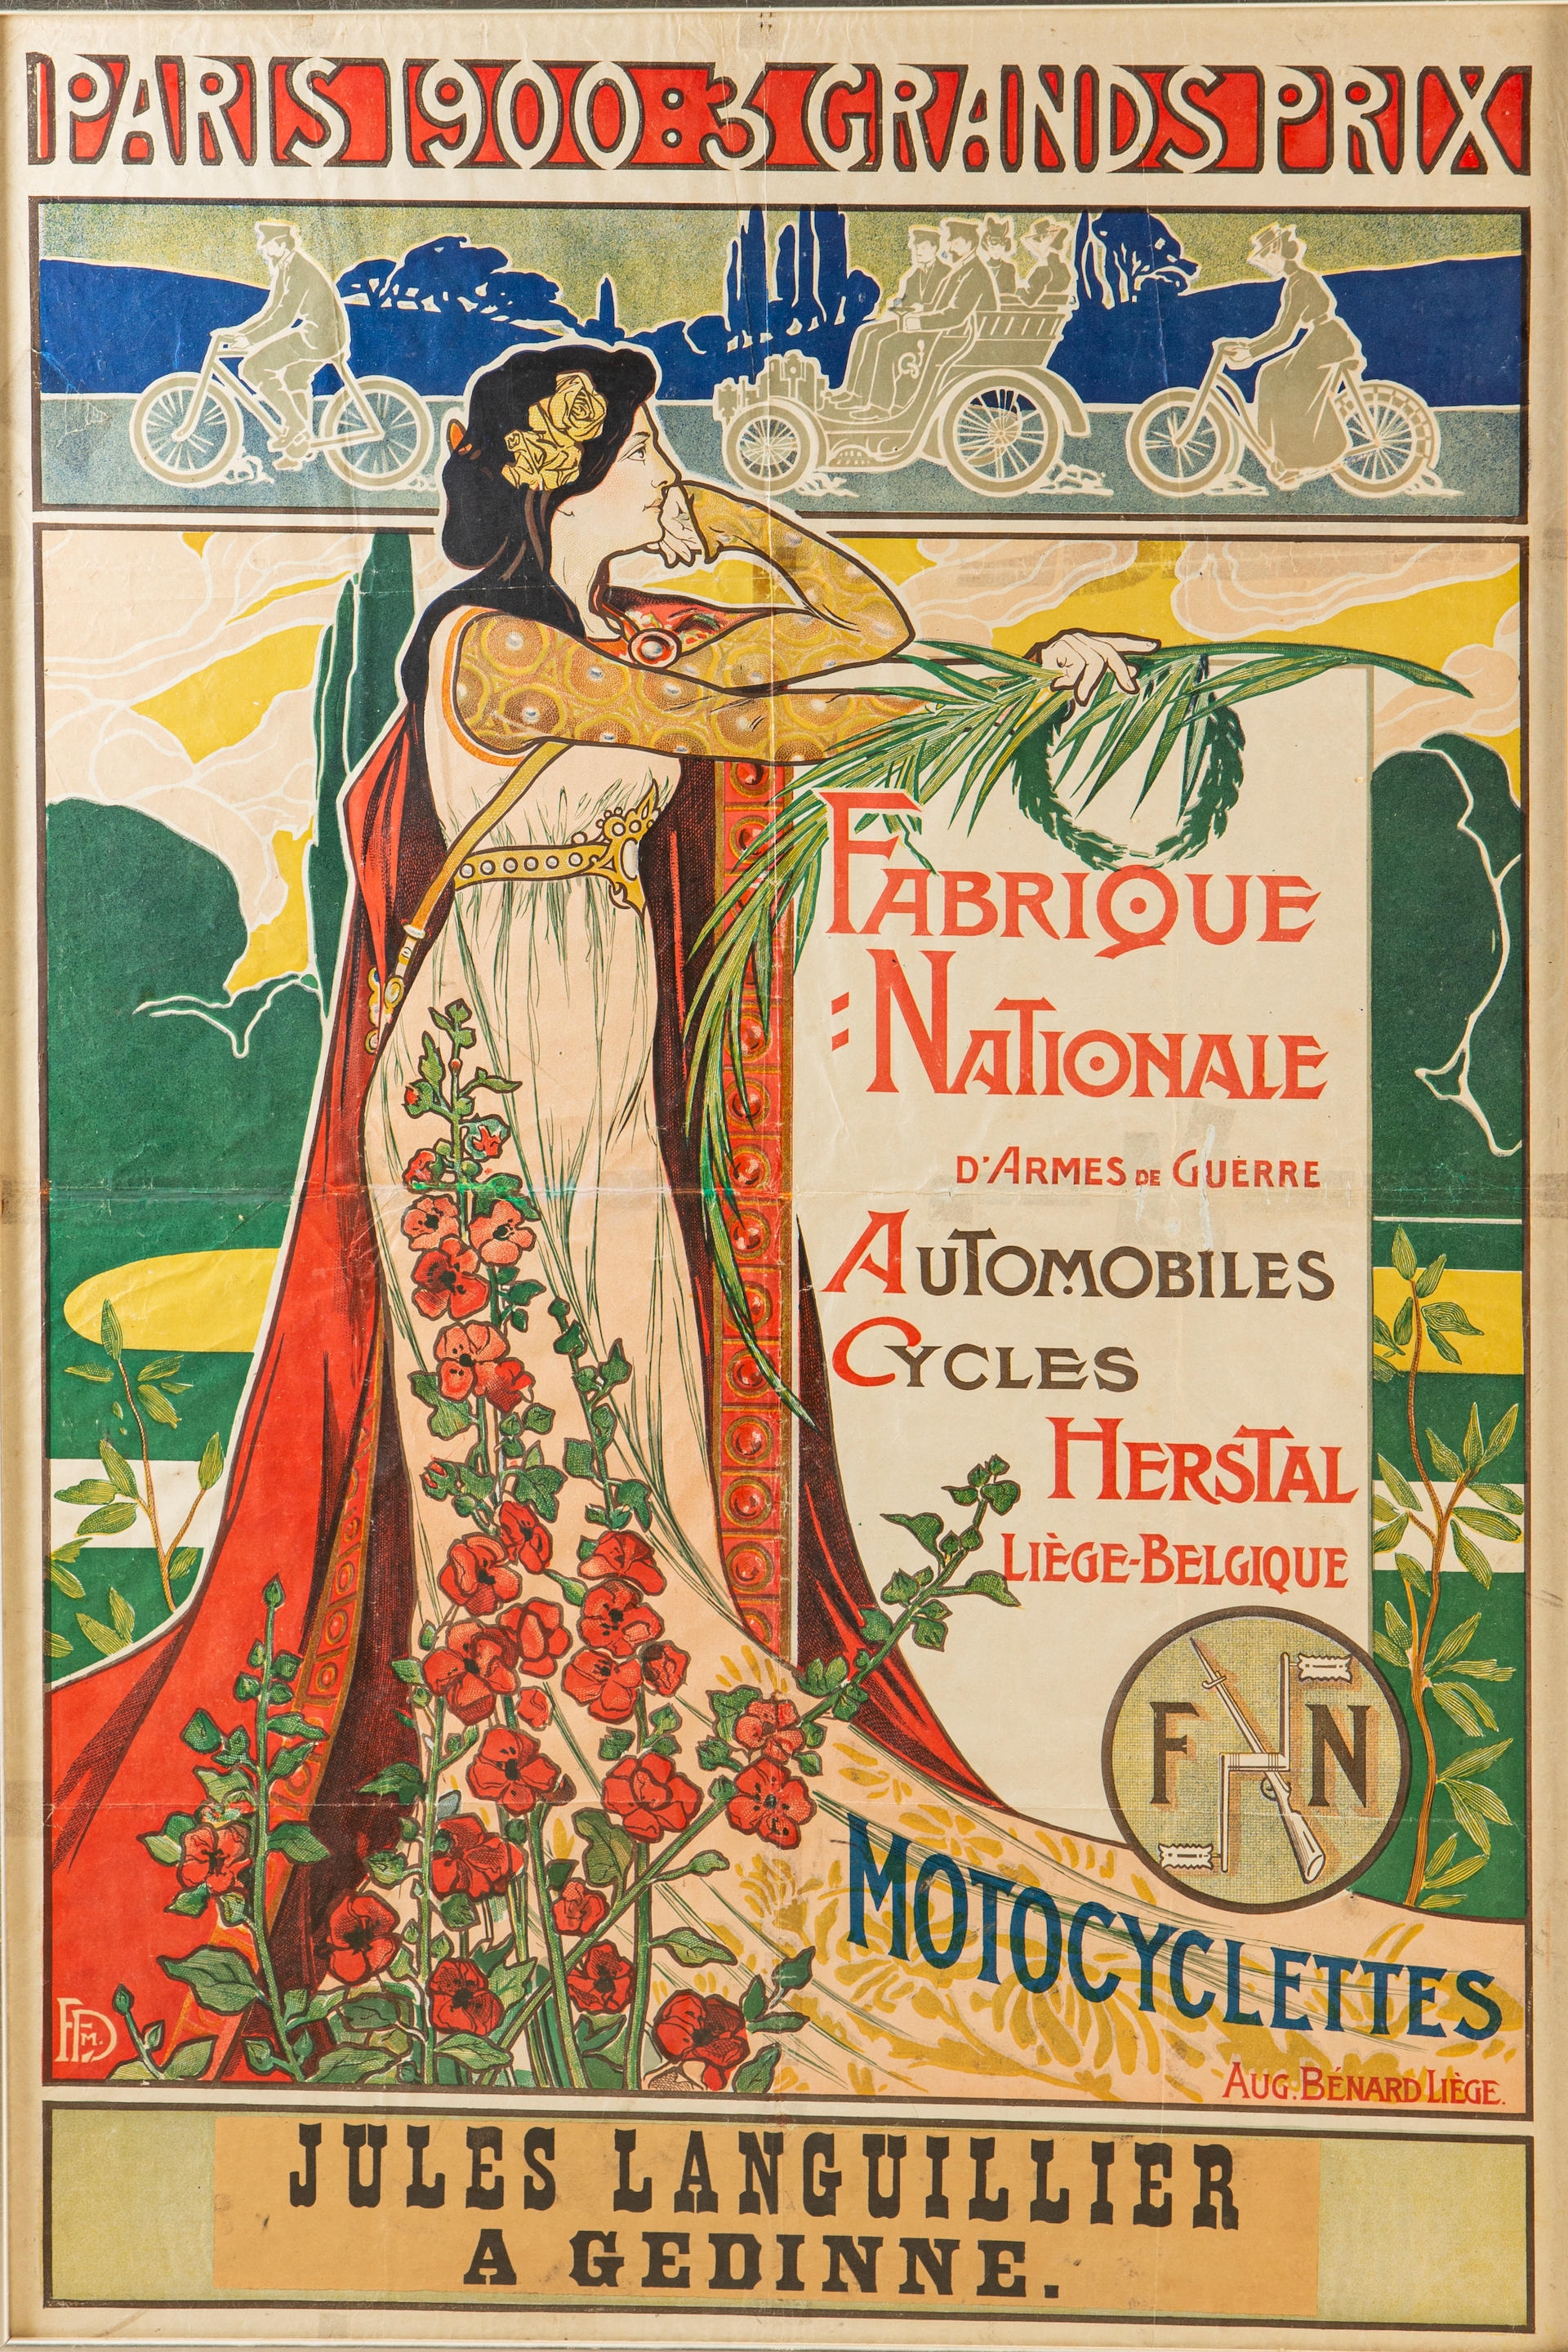 A Fabrique Nationale Automobiles, Cycles, Motocyclettes, 'Paris 1900 3 Grand Prix' poster, Belgian,